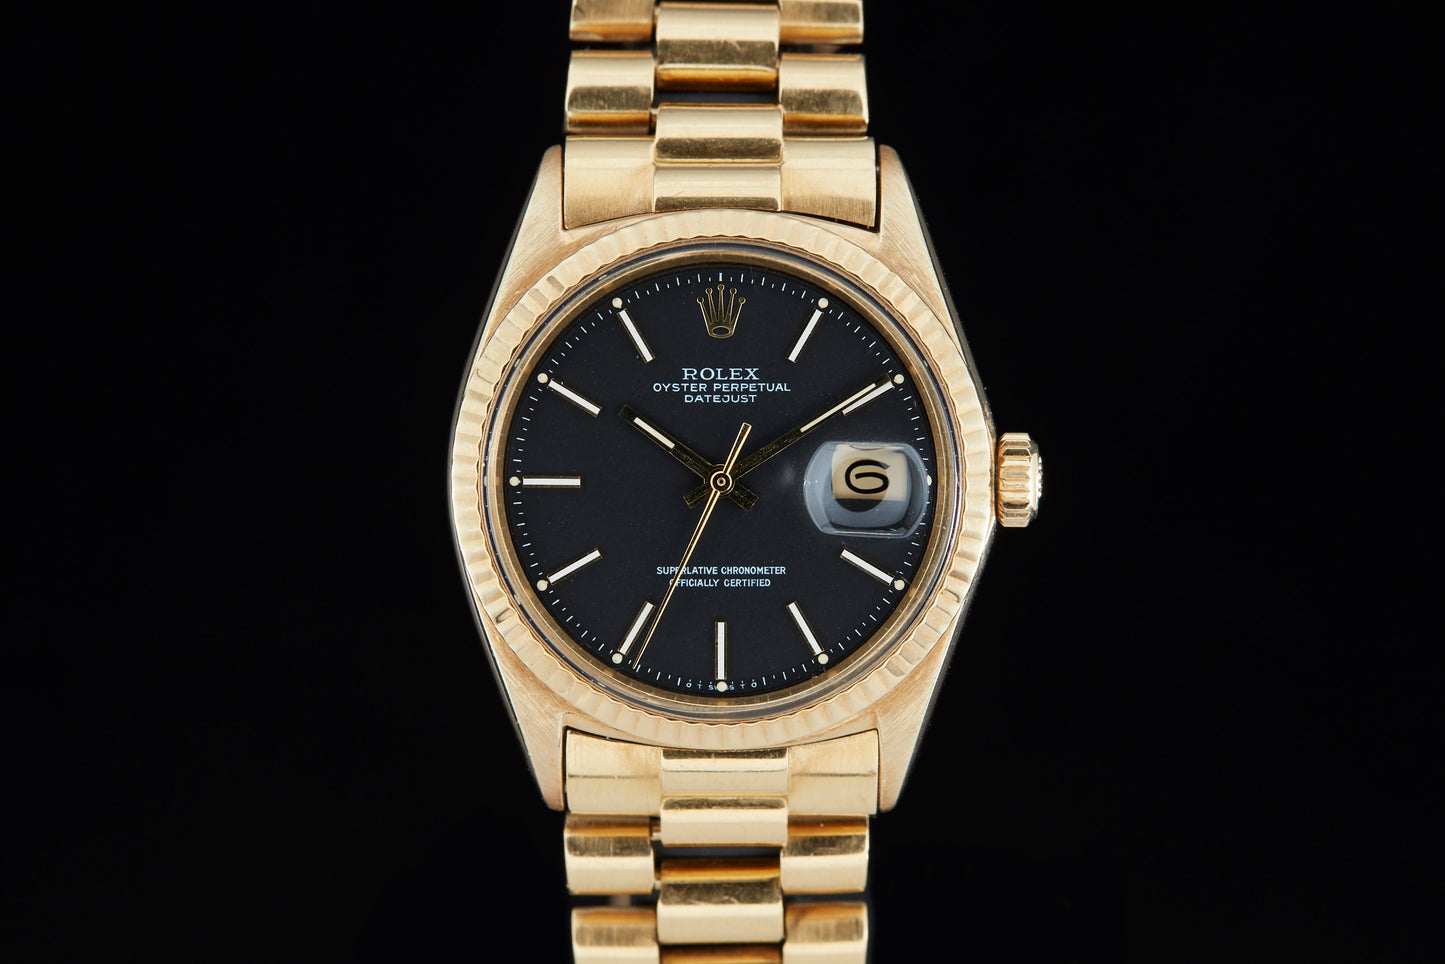 Solid gold vintage Rolex Datejust on black background